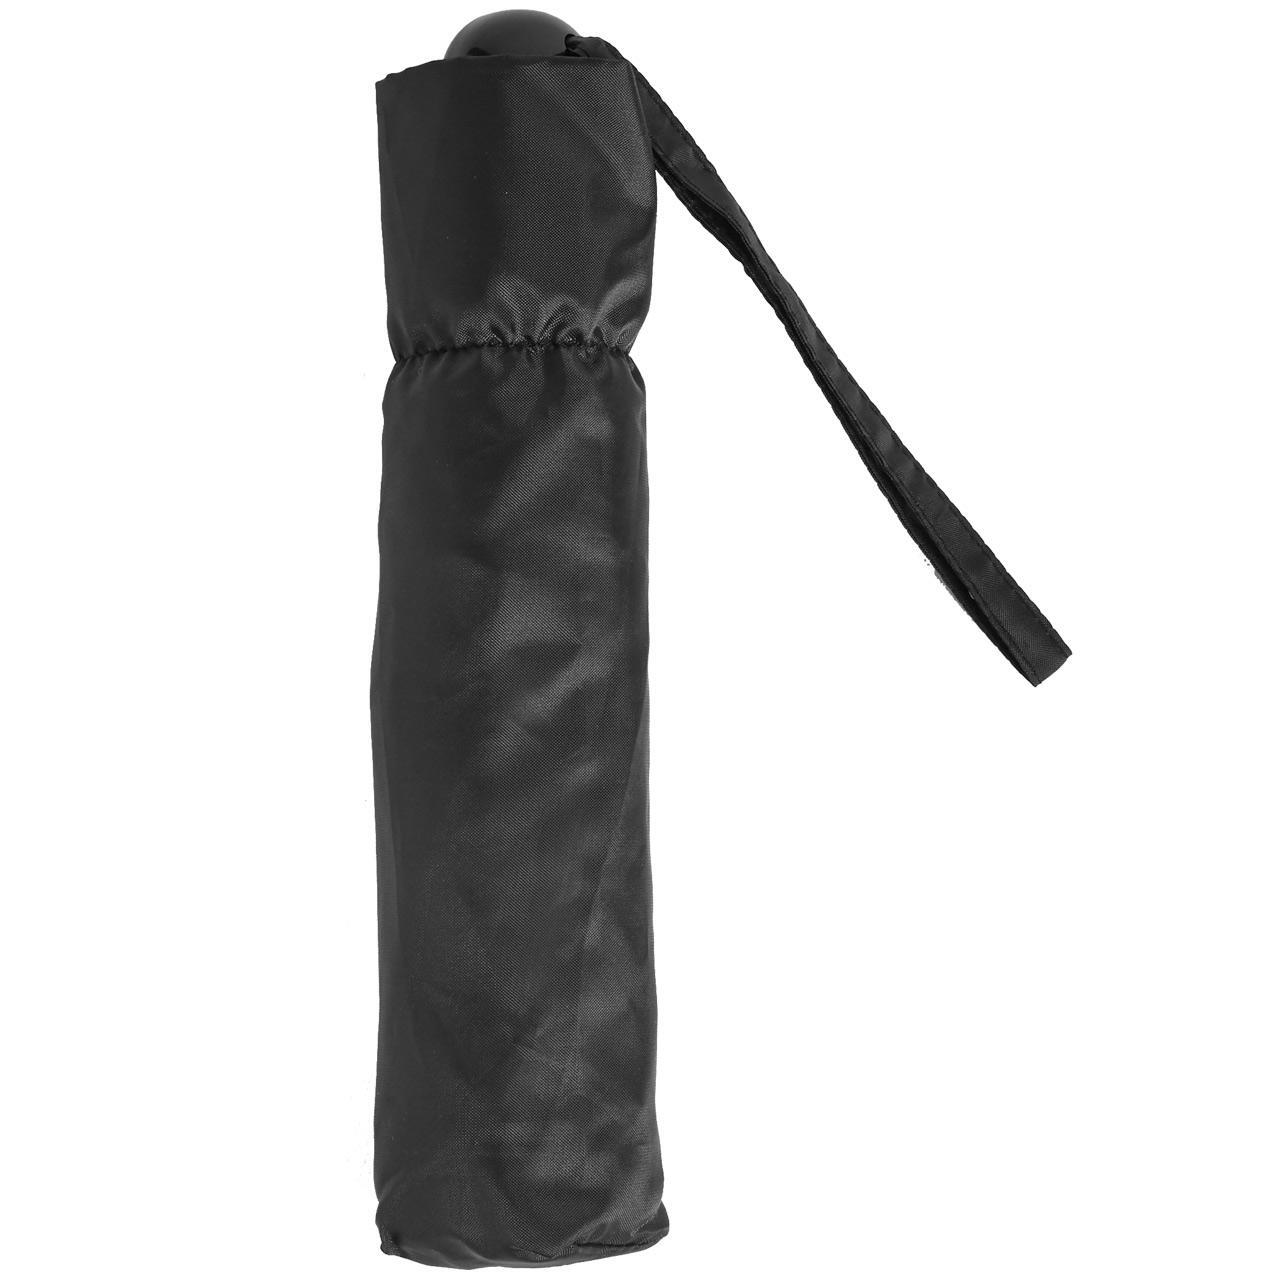 M&S Collection Sheen Compact Umbrella, Black